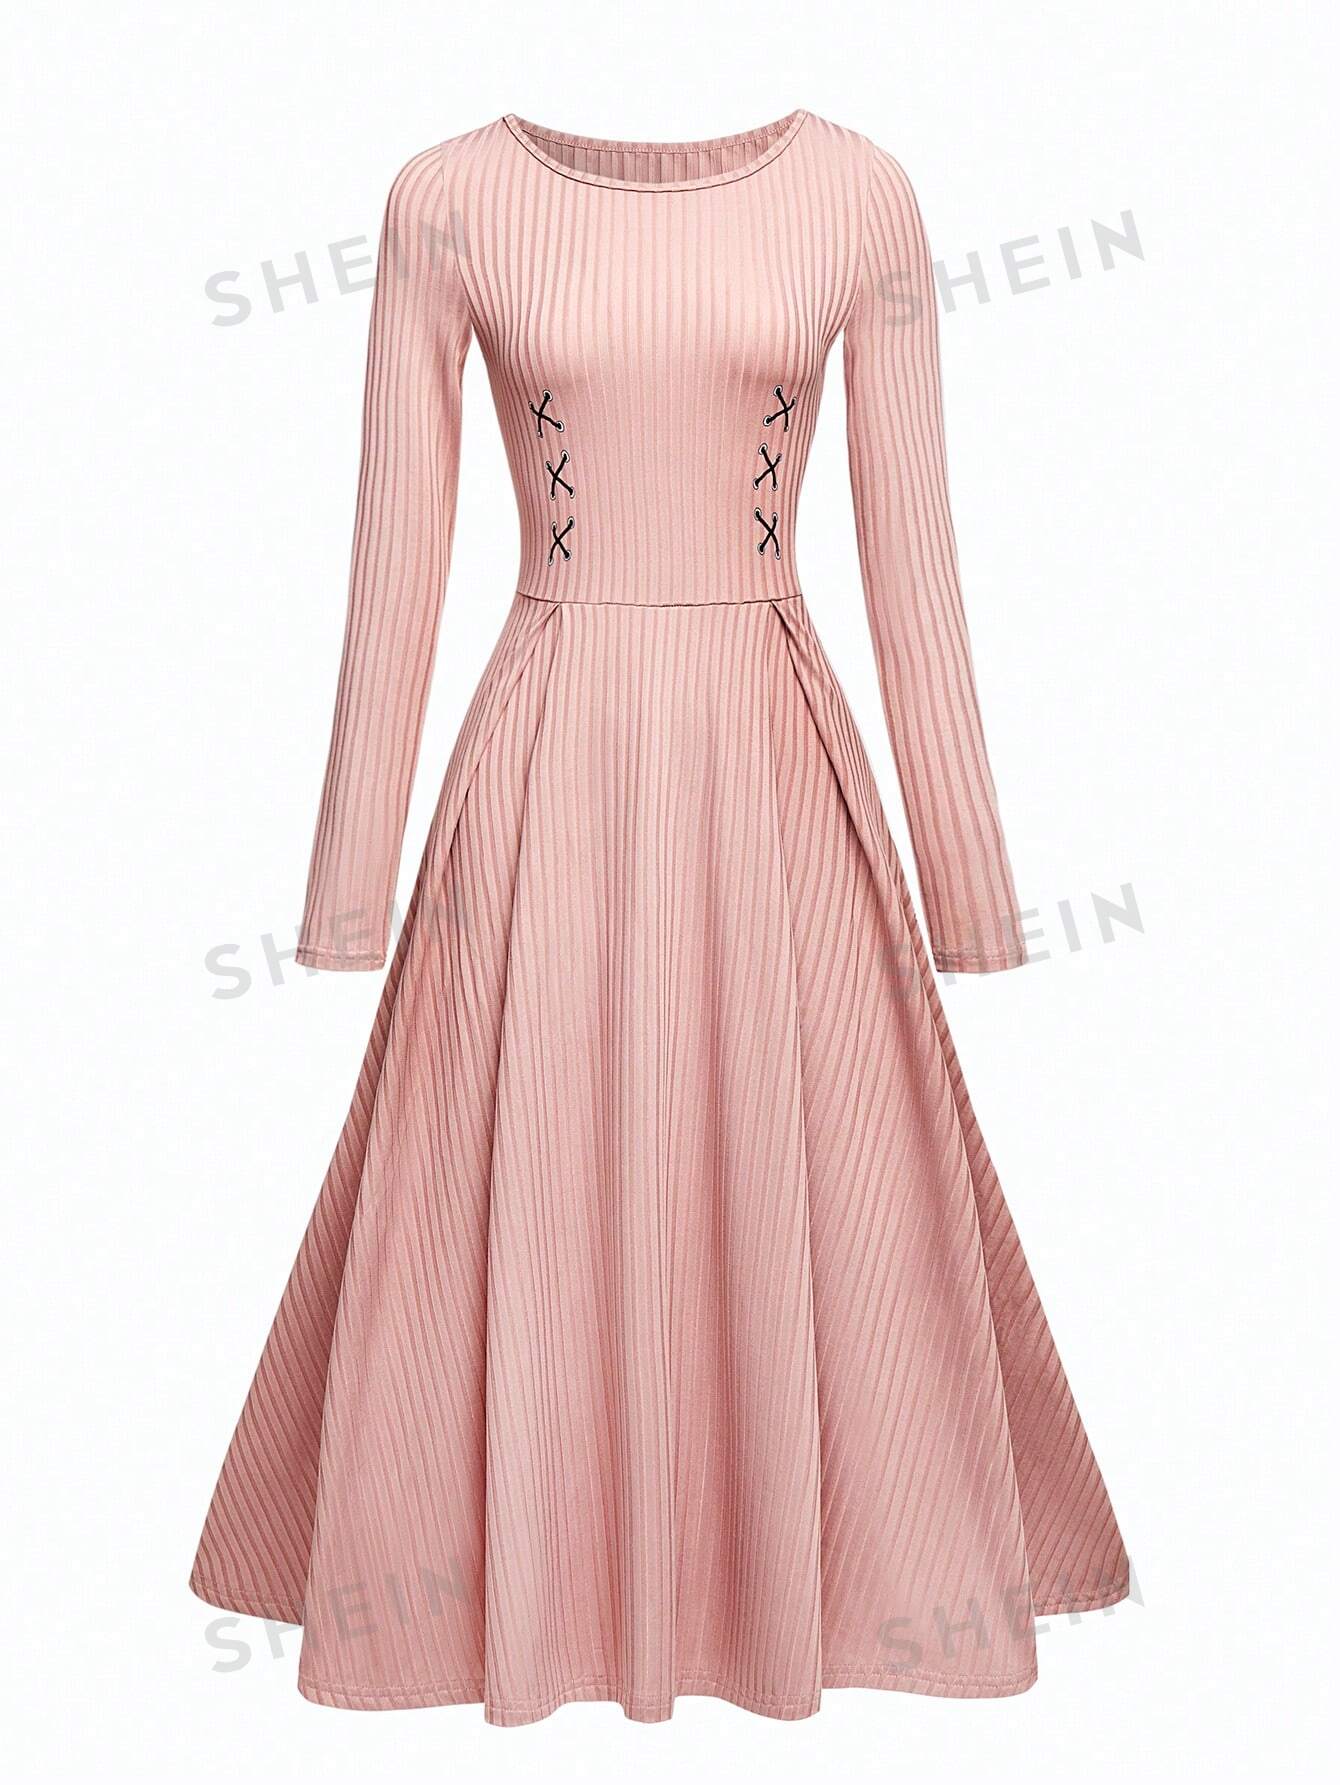 SHEIN Unity женское облегающее платье в рубчик с круглым вырезом и длинными рукавами, пыльный розовый женское трикотажное мини платье в полоску облегающее хлопковое платье без рукавов с круглым вырезом лето 2021